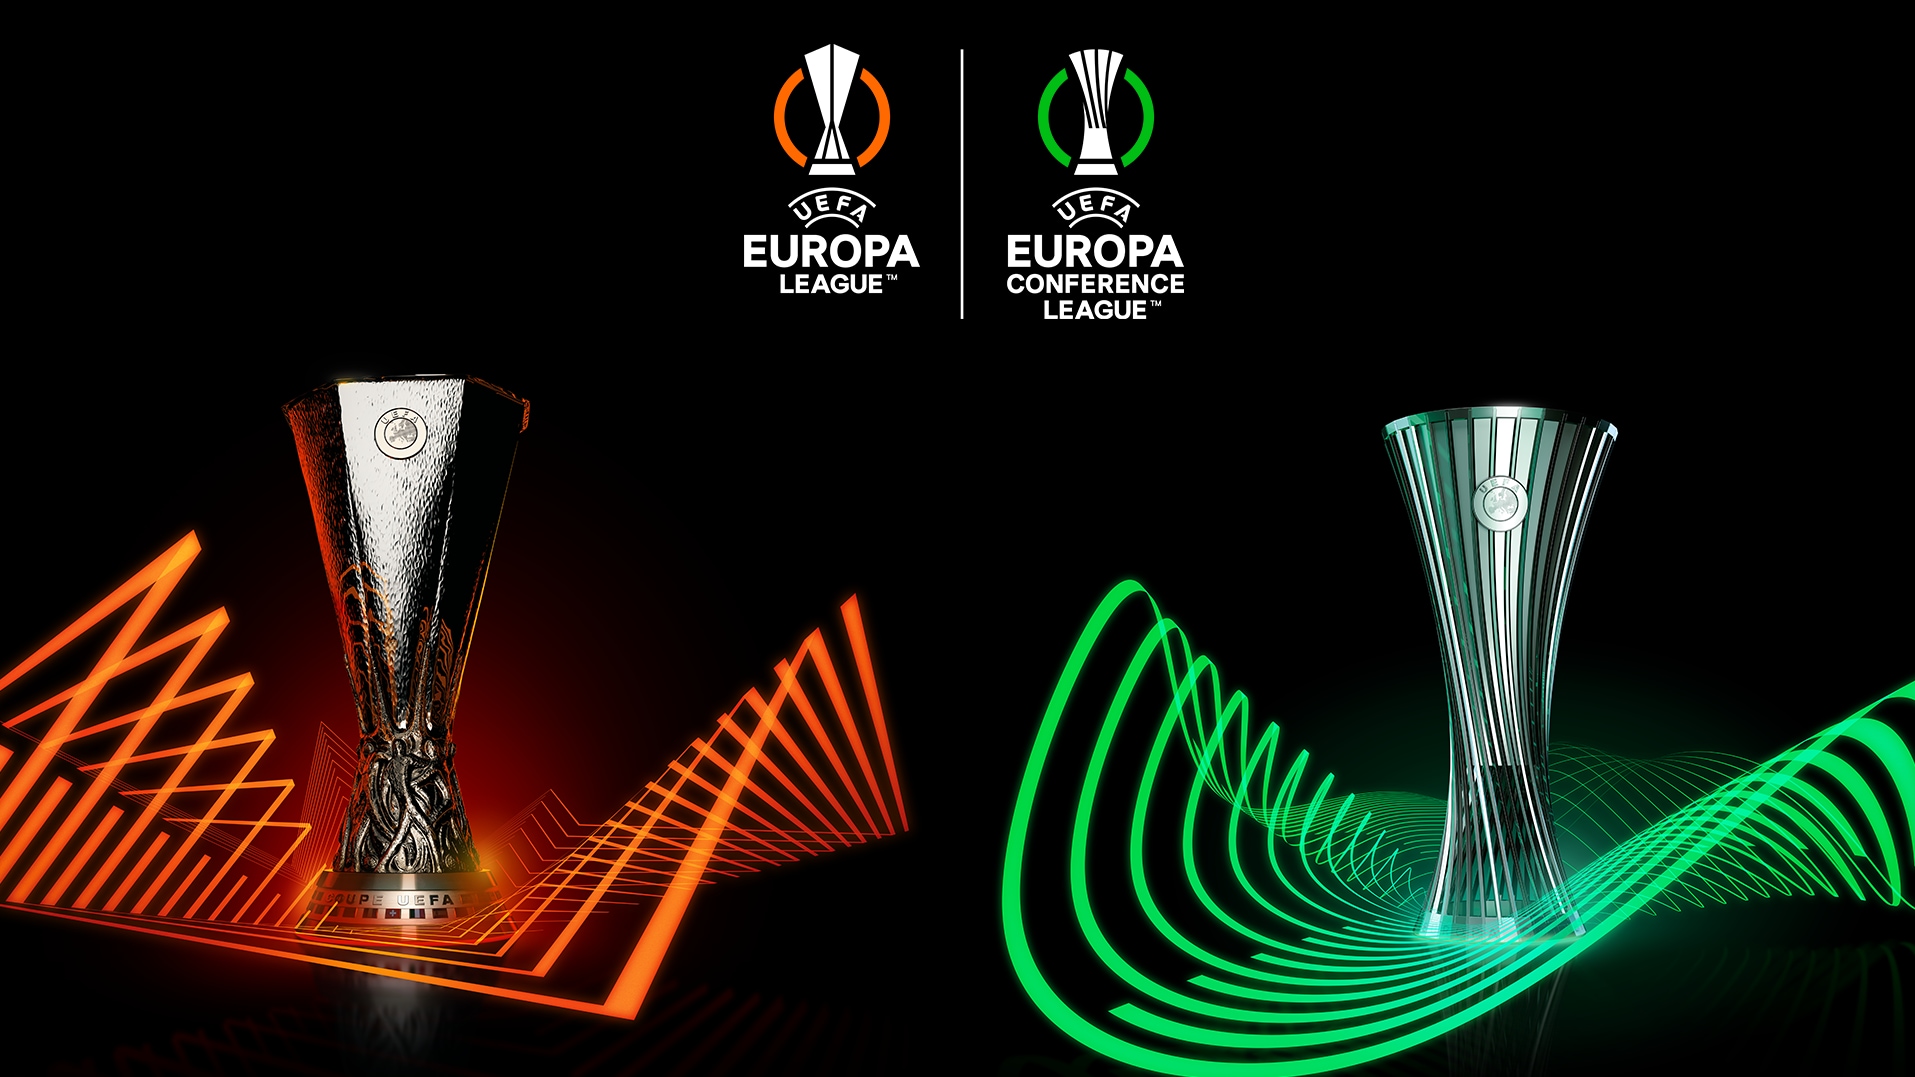 Përcaktohen sonte finalistët e Europa League dhe Conference League